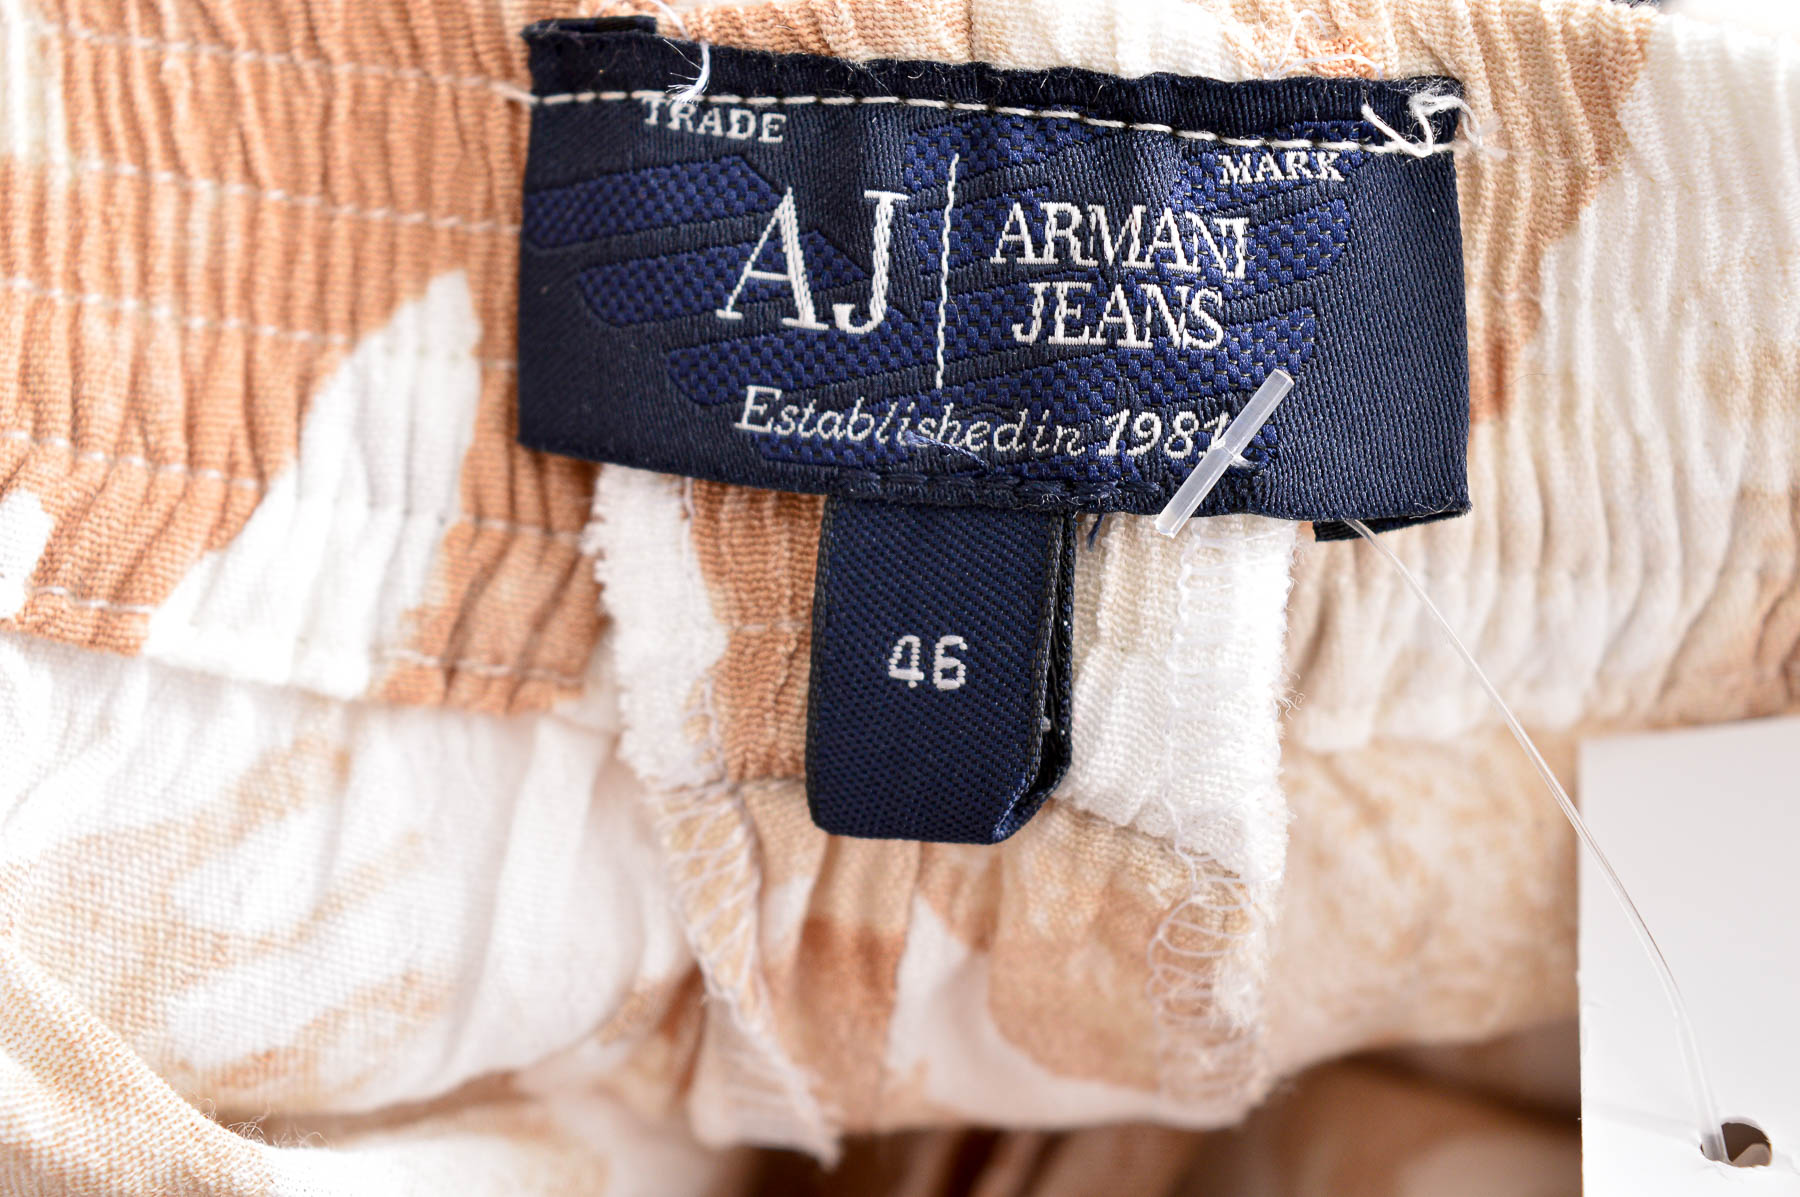 Γυναικεία παντελόνια - Armani Jeans - 2